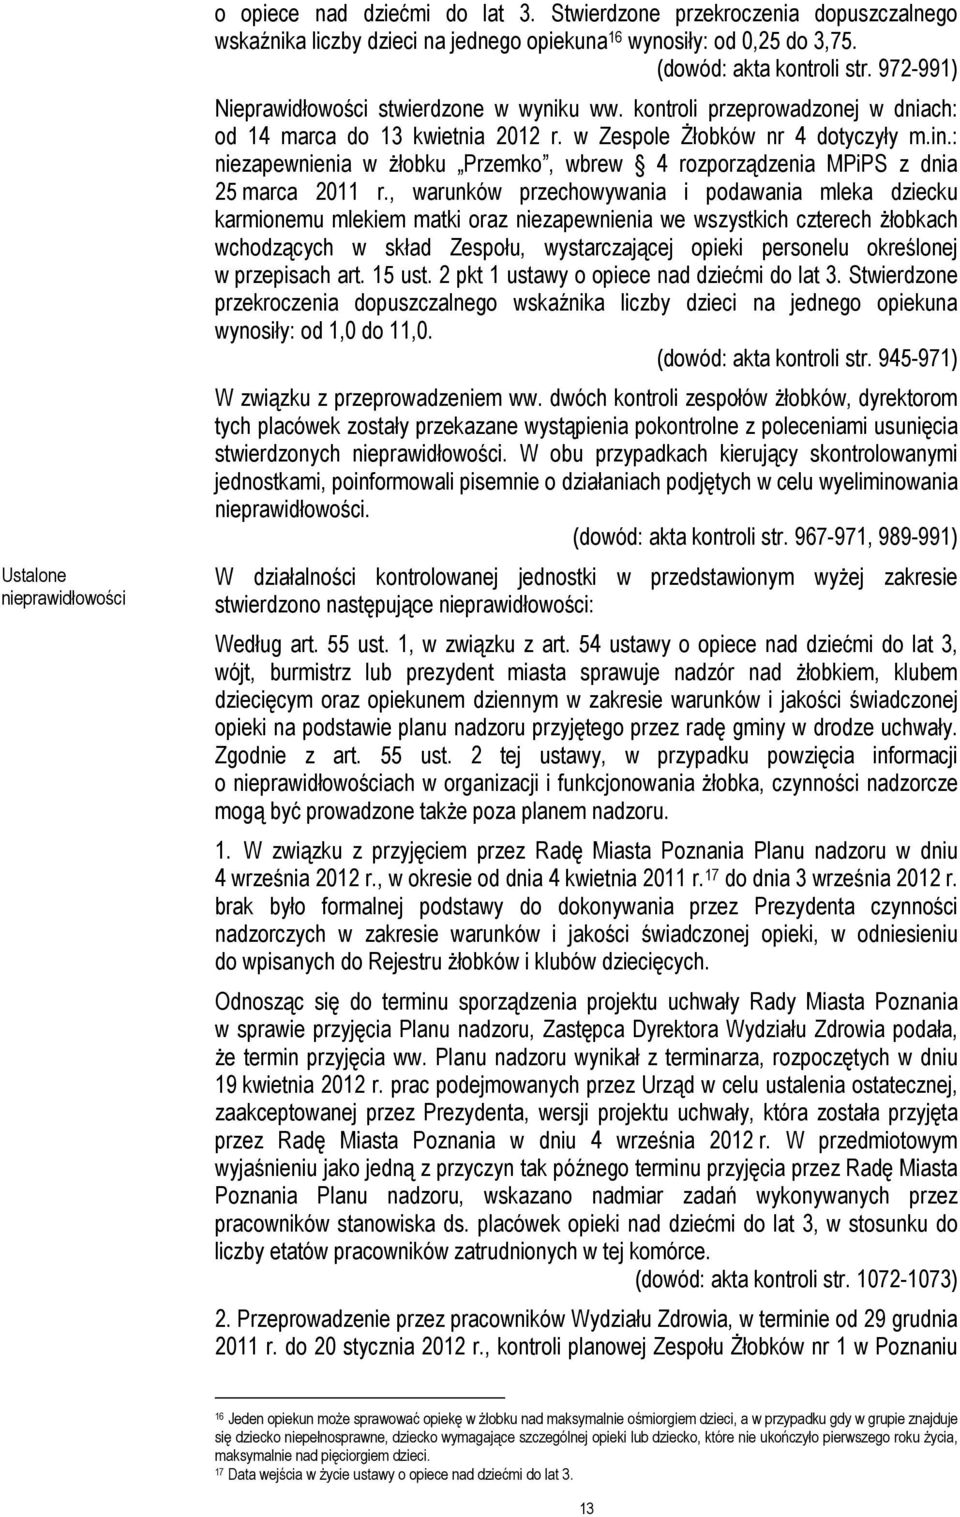 : niezapewnienia w żłobku Przemko, wbrew 4 rozporządzenia MPiPS z dnia 25 marca 2011 r.